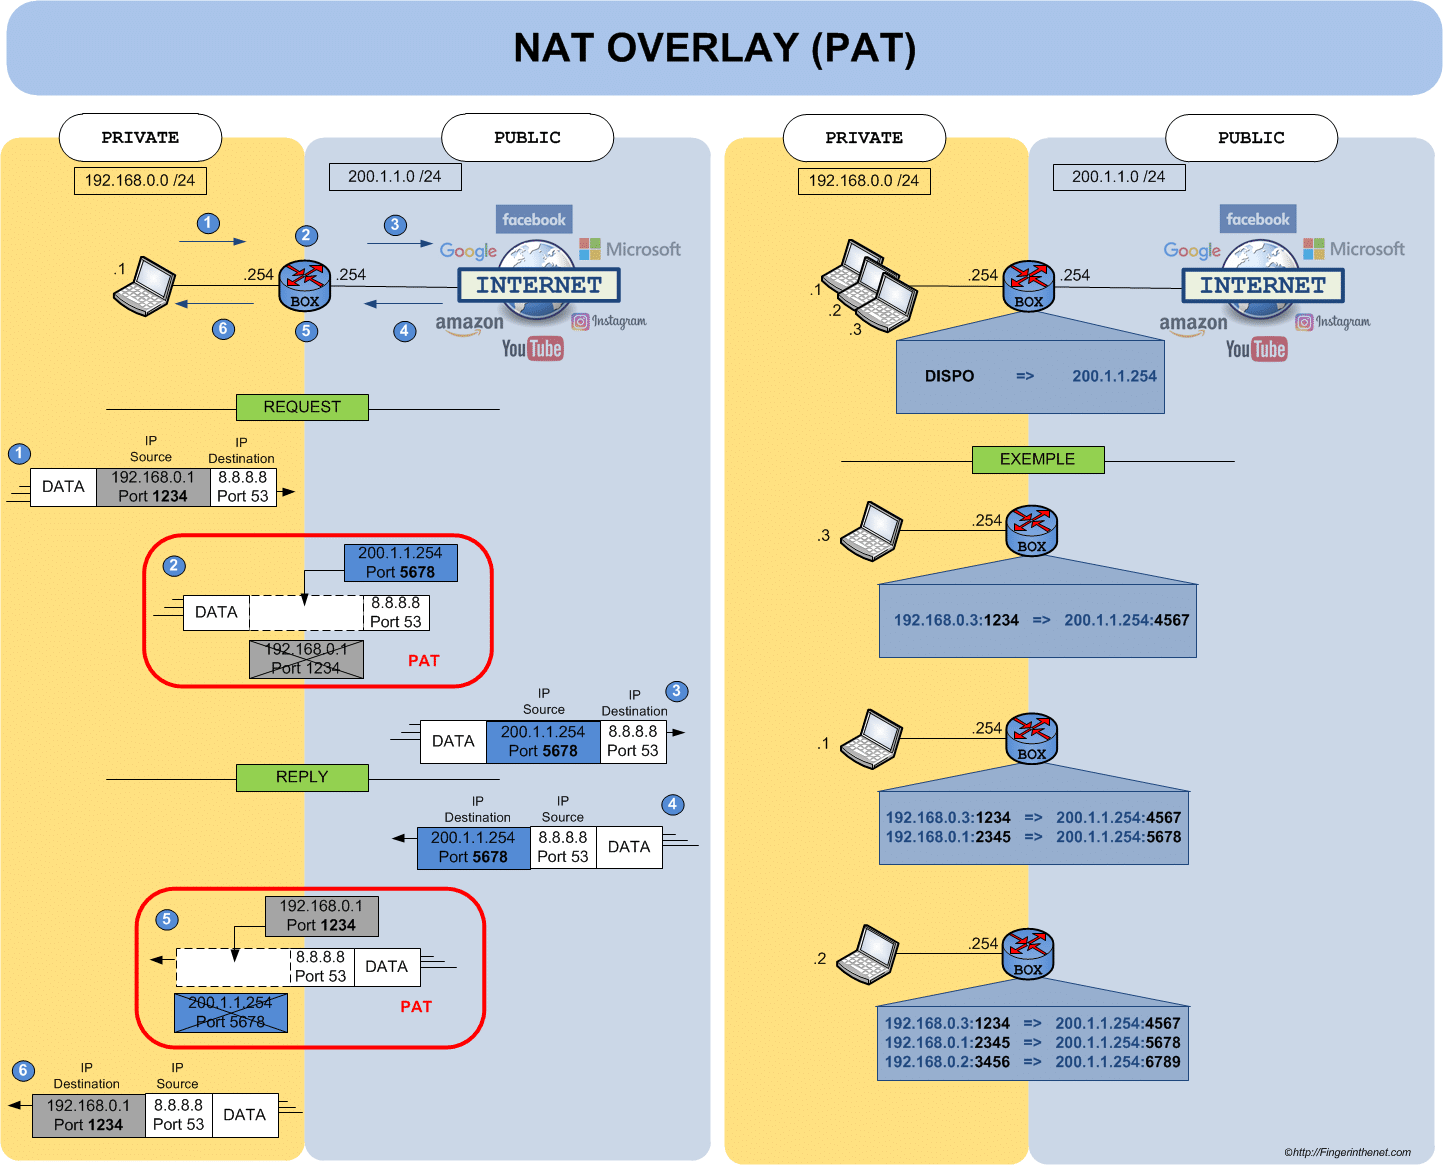 Principe de fonctionnement du NAT - PAT